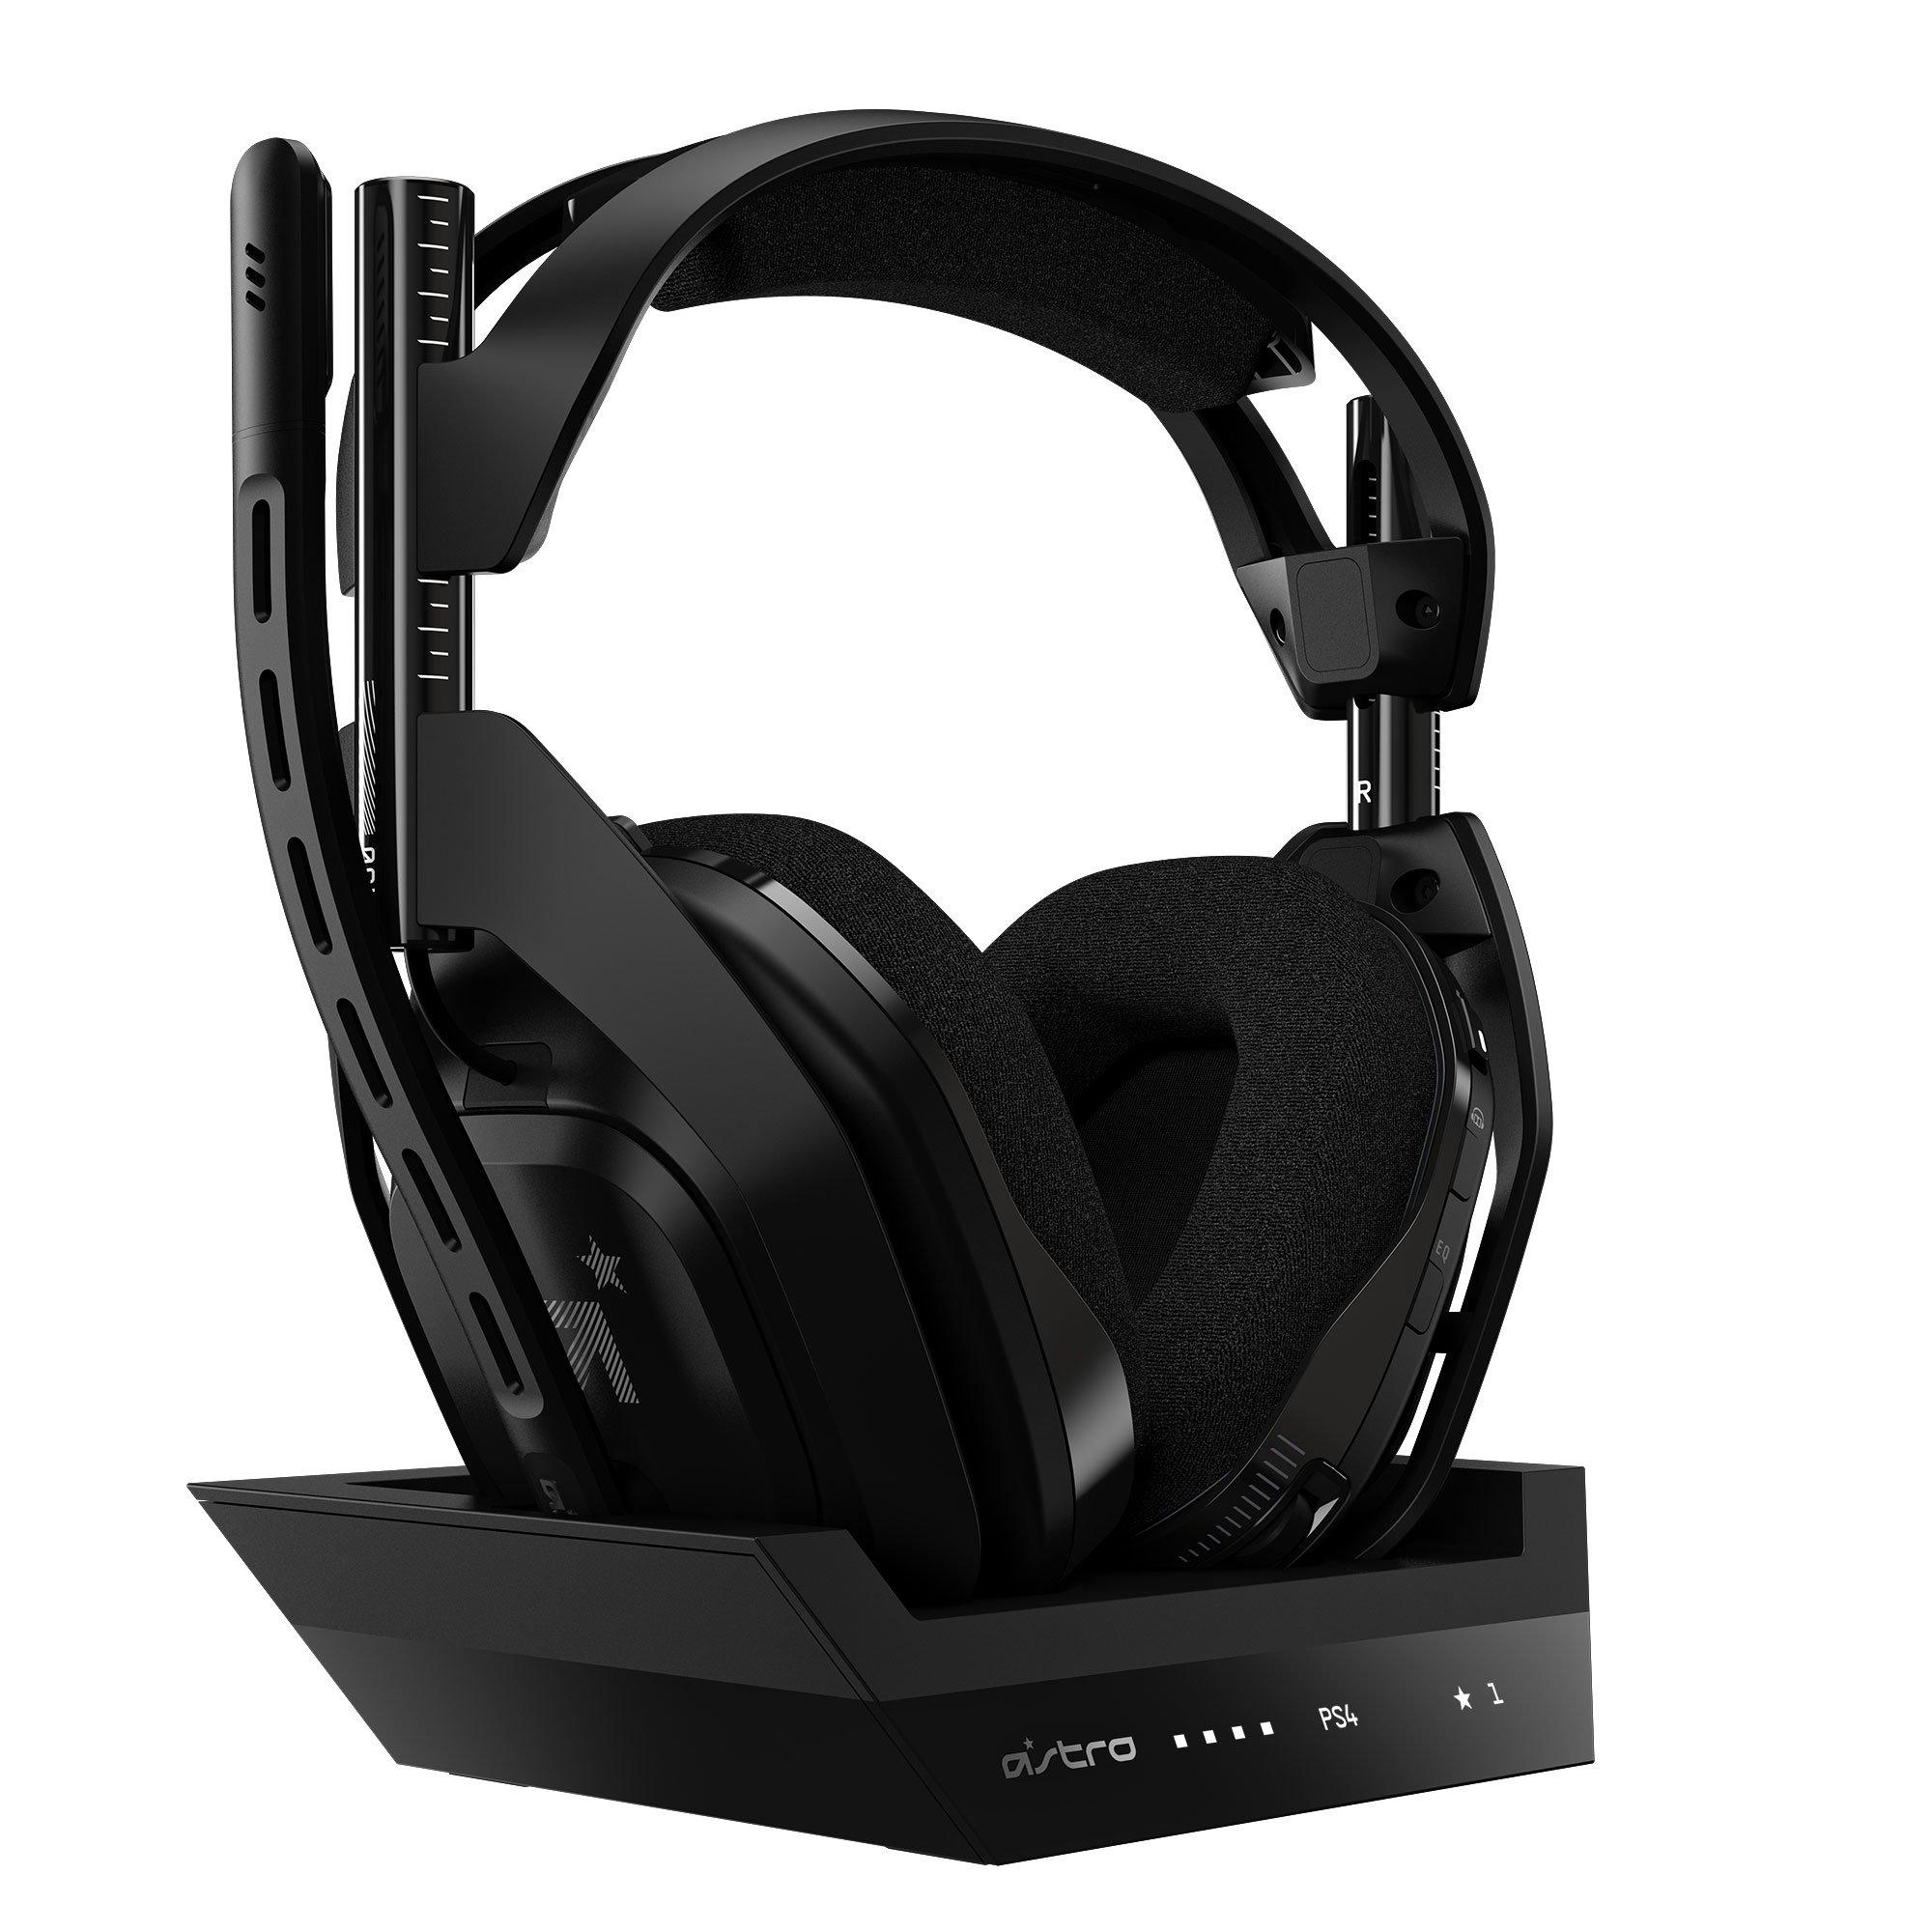 astro headset ps4 best buy